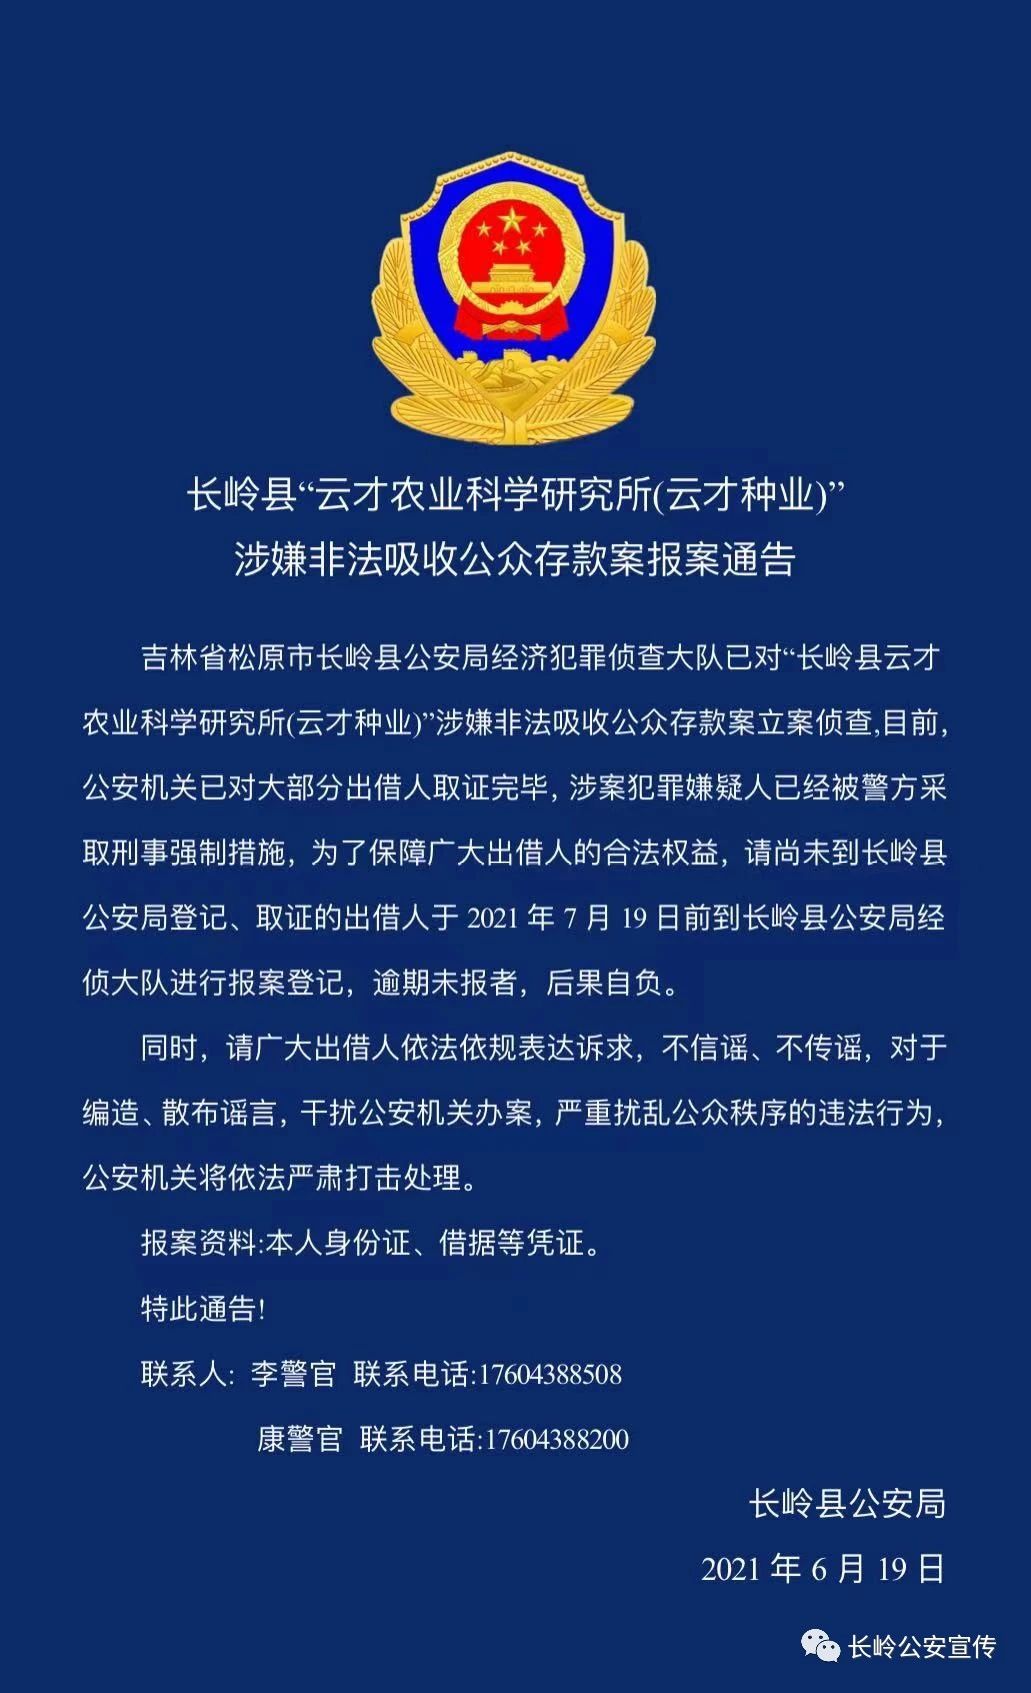 长岭县公安局发布重要通告